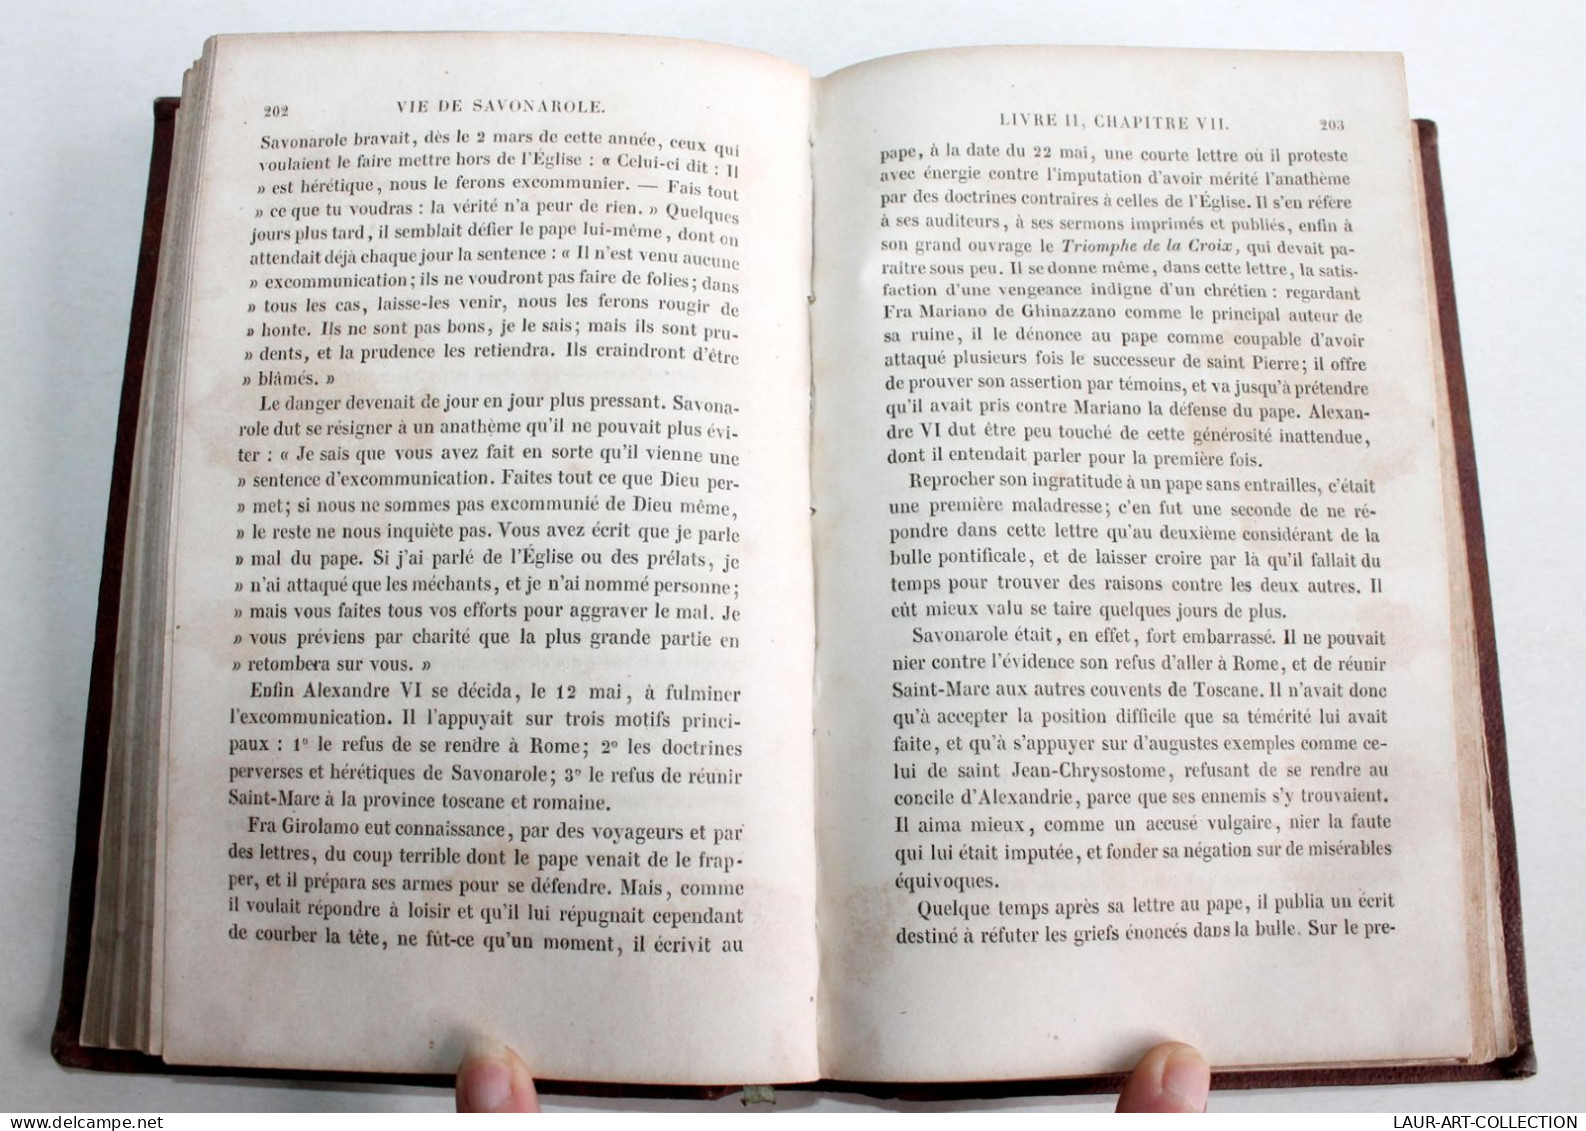 RARE DÉDICACÉ! JEROME SAVONAROLE D'APRES LES DOCUMENTS ORIGINAUX De PERRENS 1856 / ANCIEN LIVRE XIXe SIECLE (2603.6) - Autographed